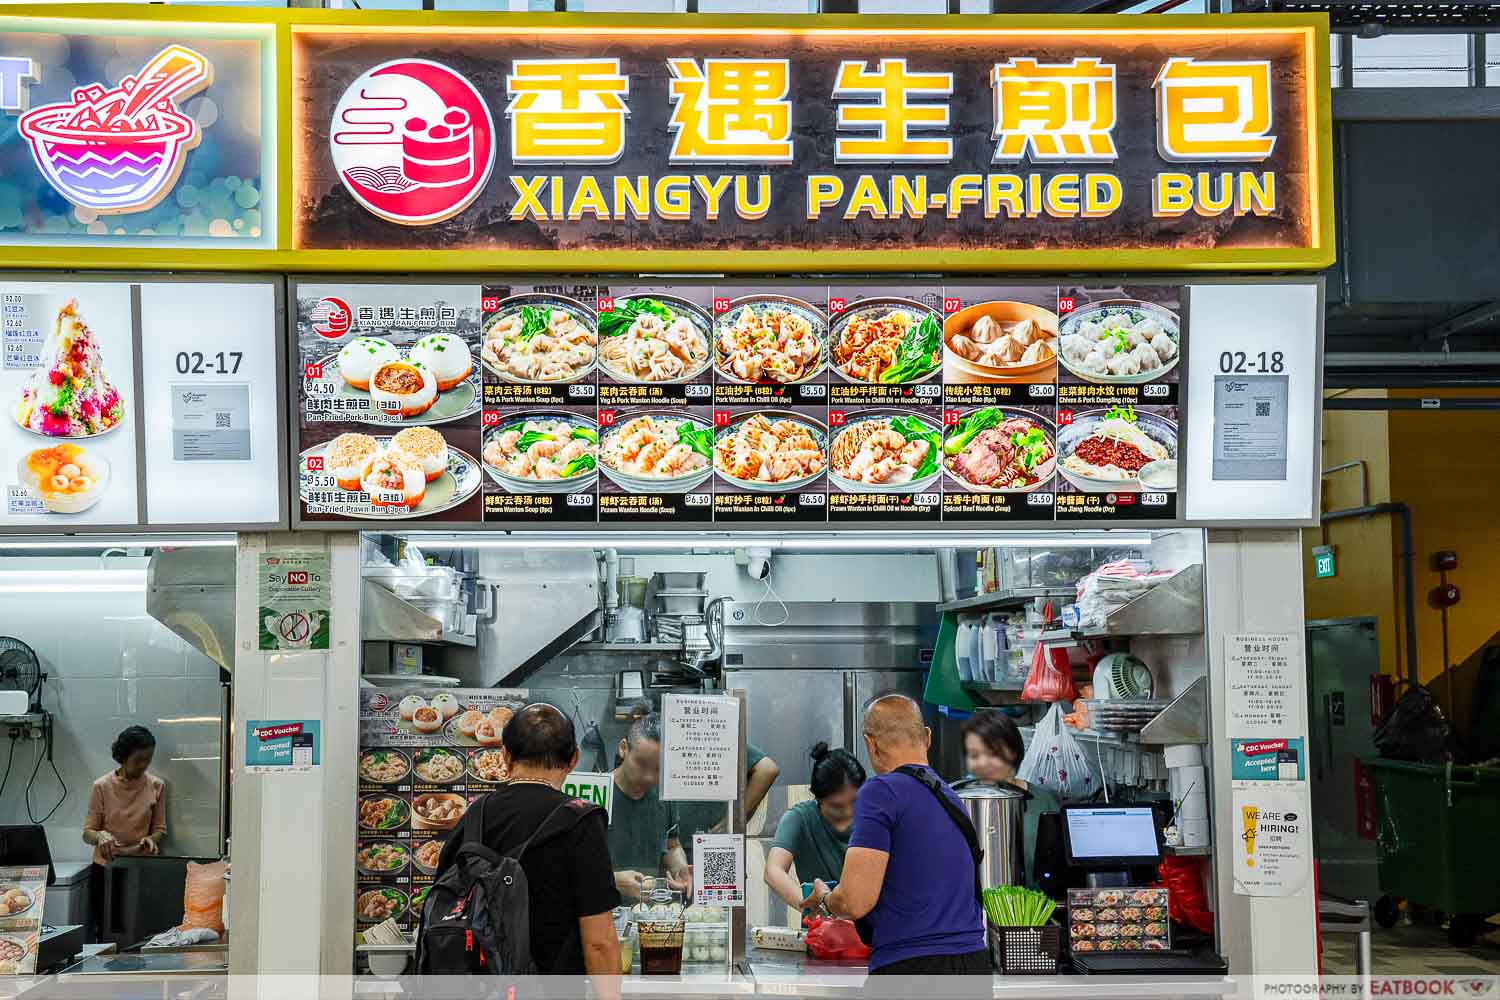 xiang-yu-pan-fried-bun-storefront